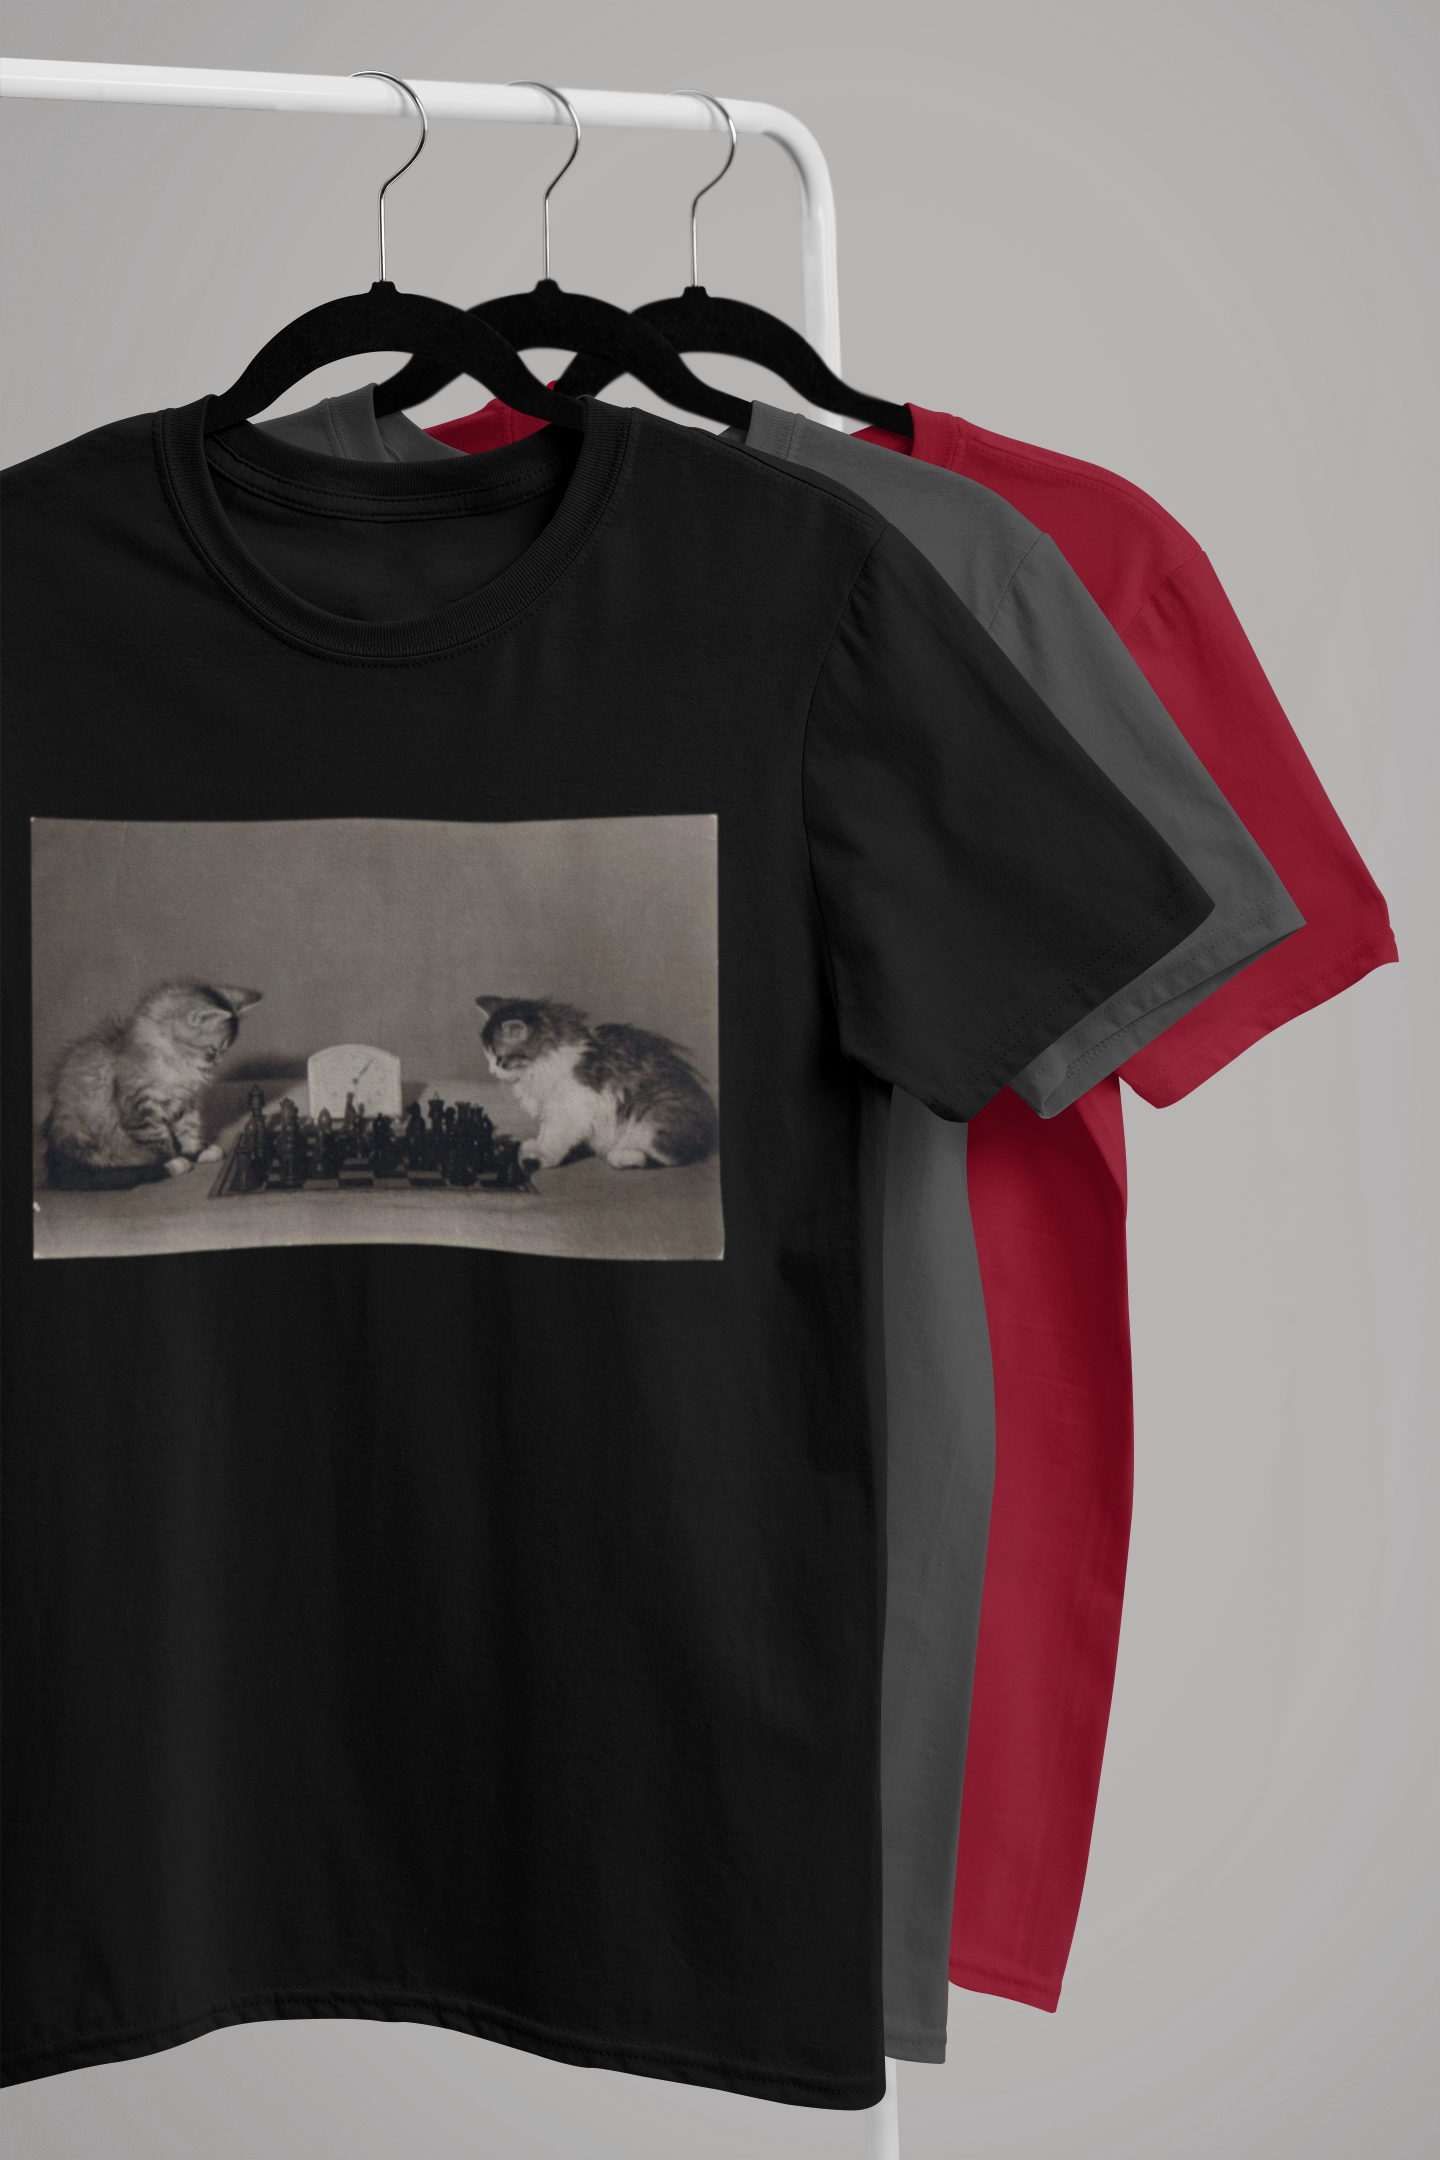 Chess Kittens T-Shirt